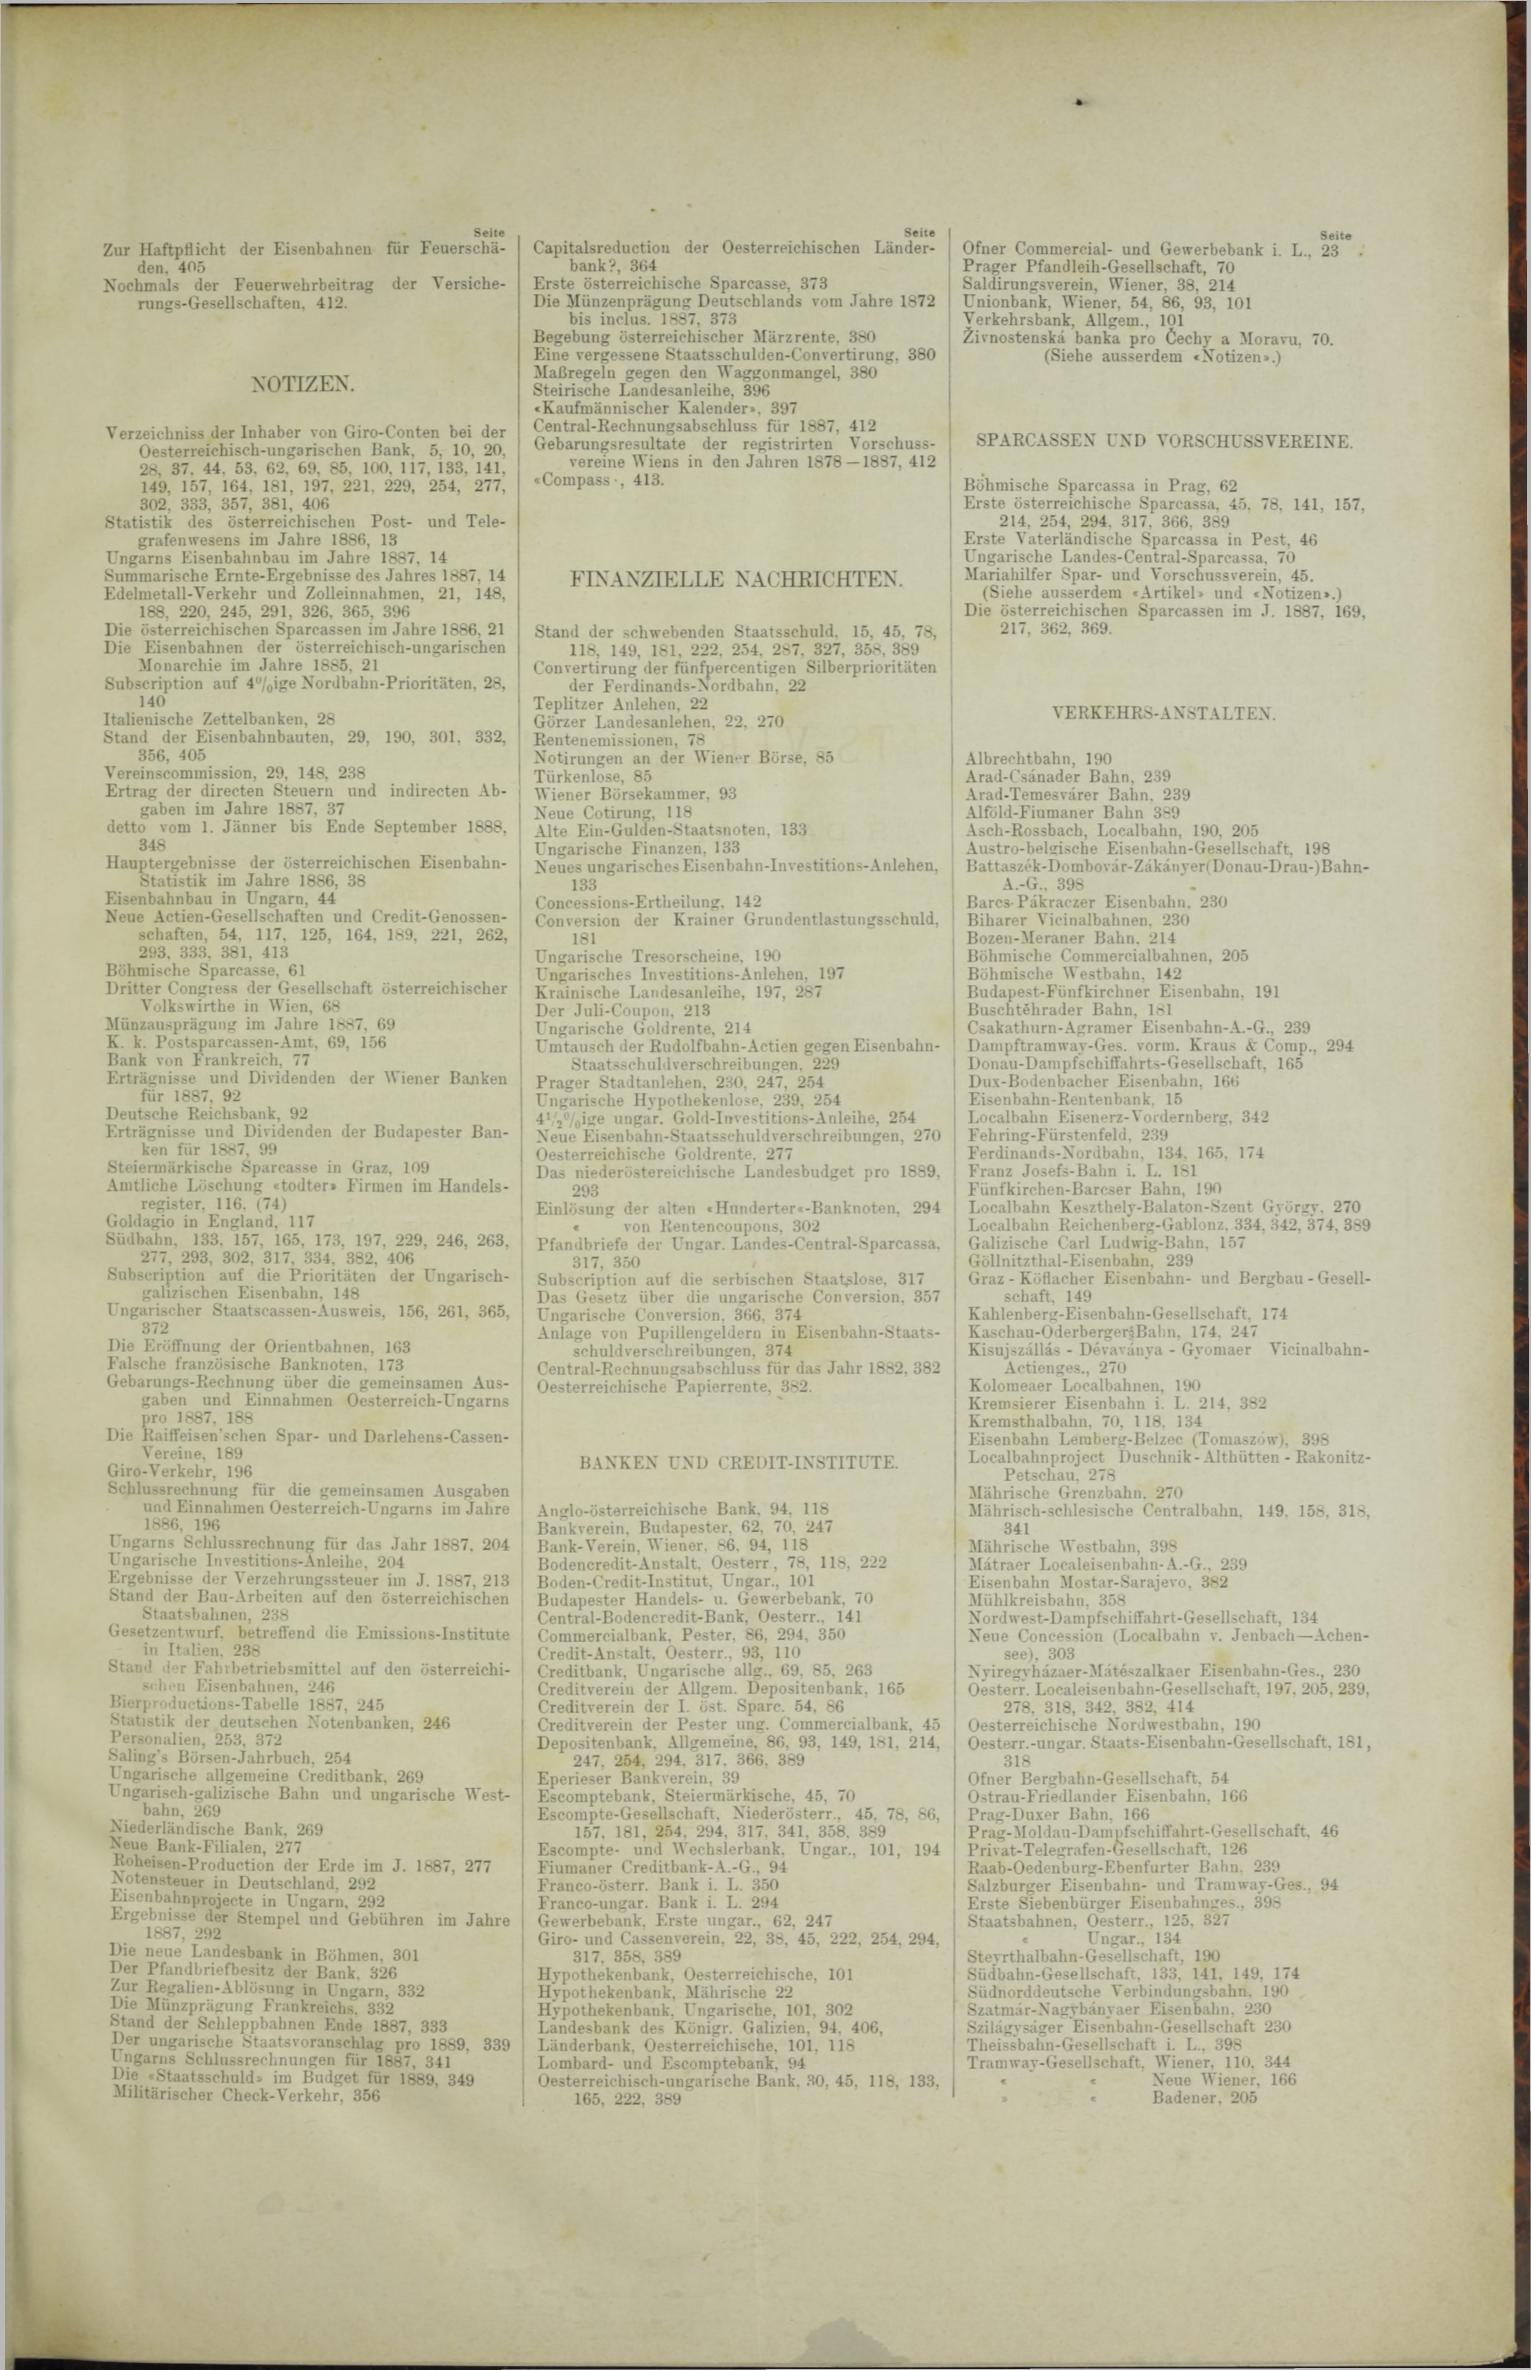 Der Tresor 15.11.1888 - Seite 11